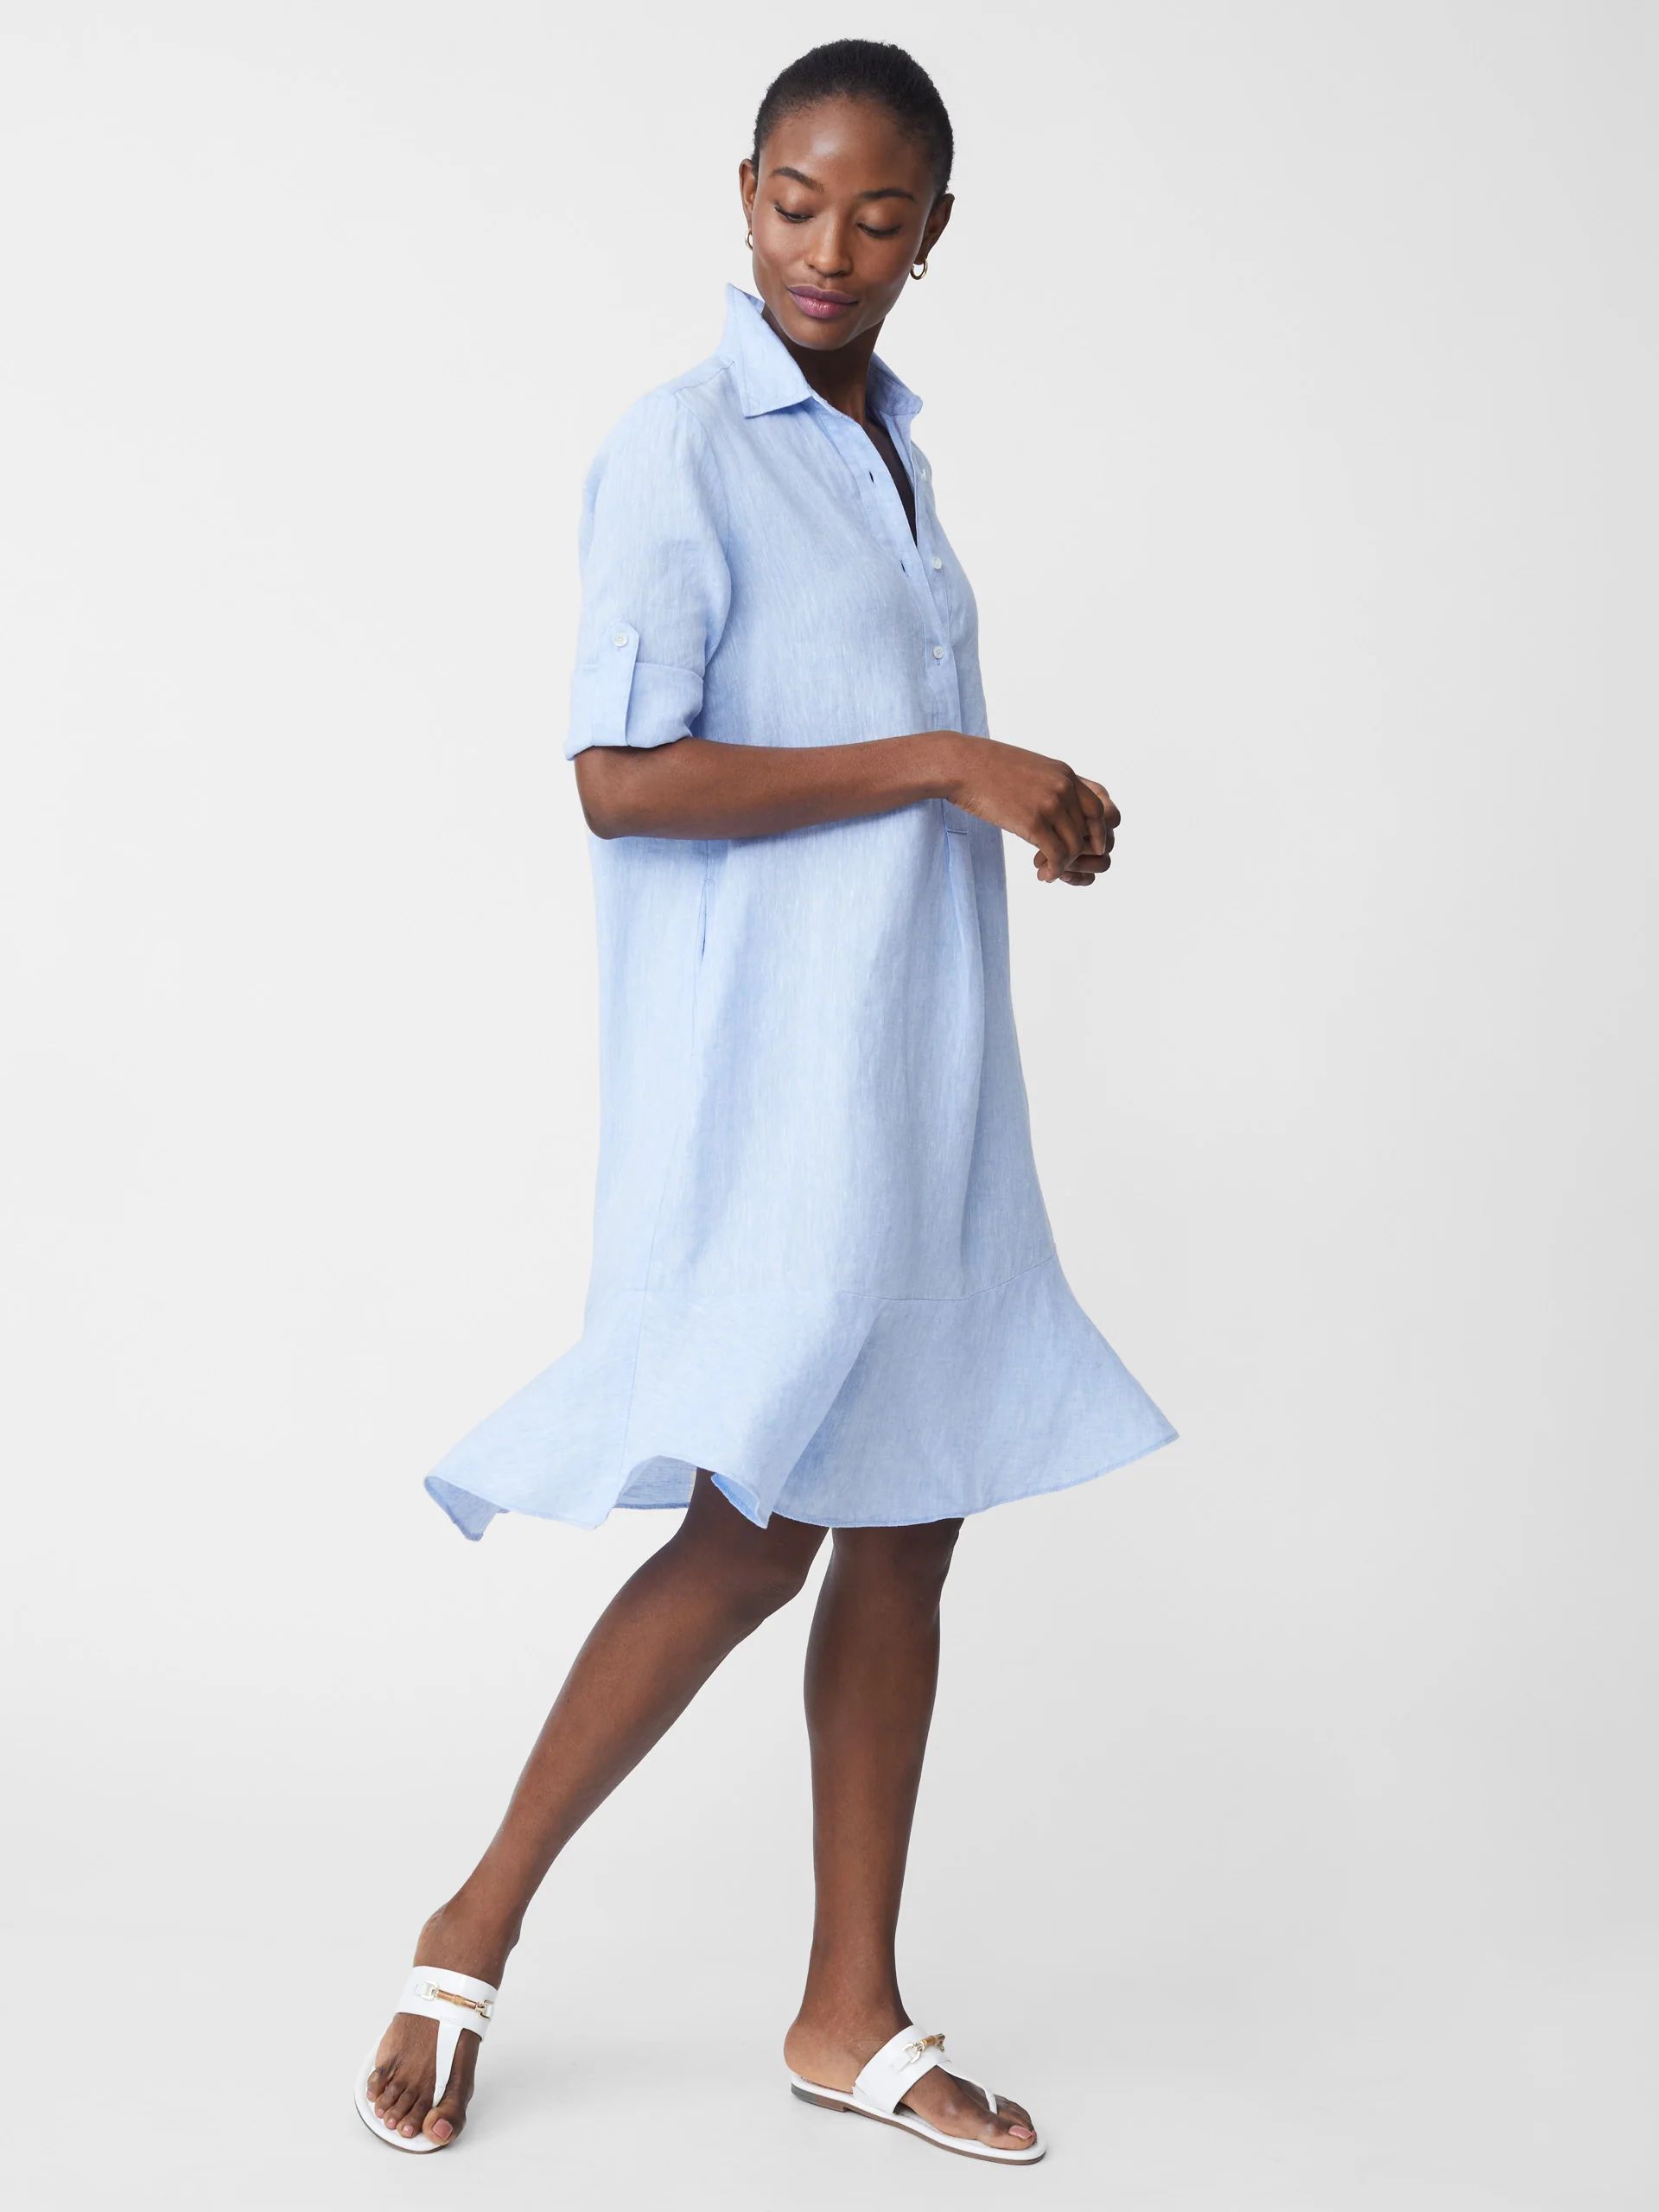 Wellesley Linen Dress | J.McLaughlin